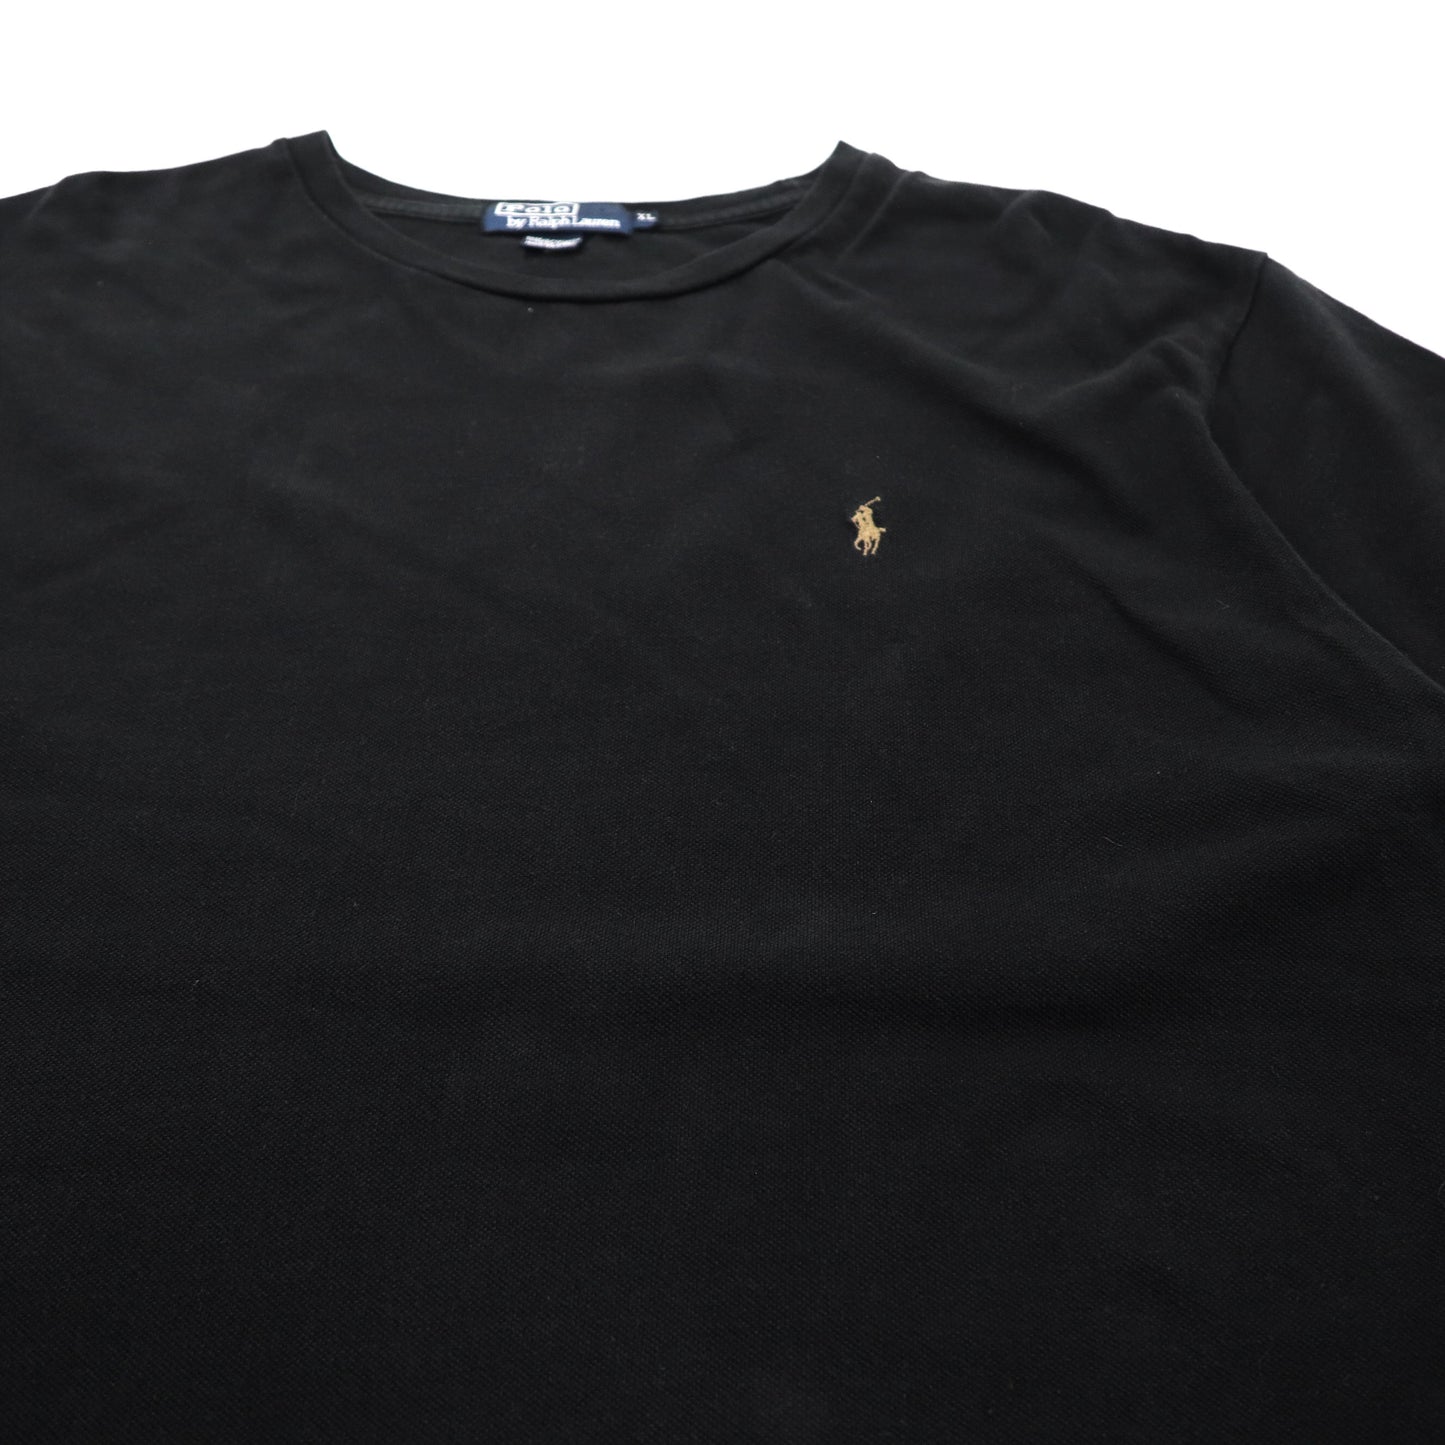 Polo by Ralph Lauren ビッグサイズ ワンポイントロゴTシャツ XL ブラック コットン 鹿の子 スモールポニー刺繍